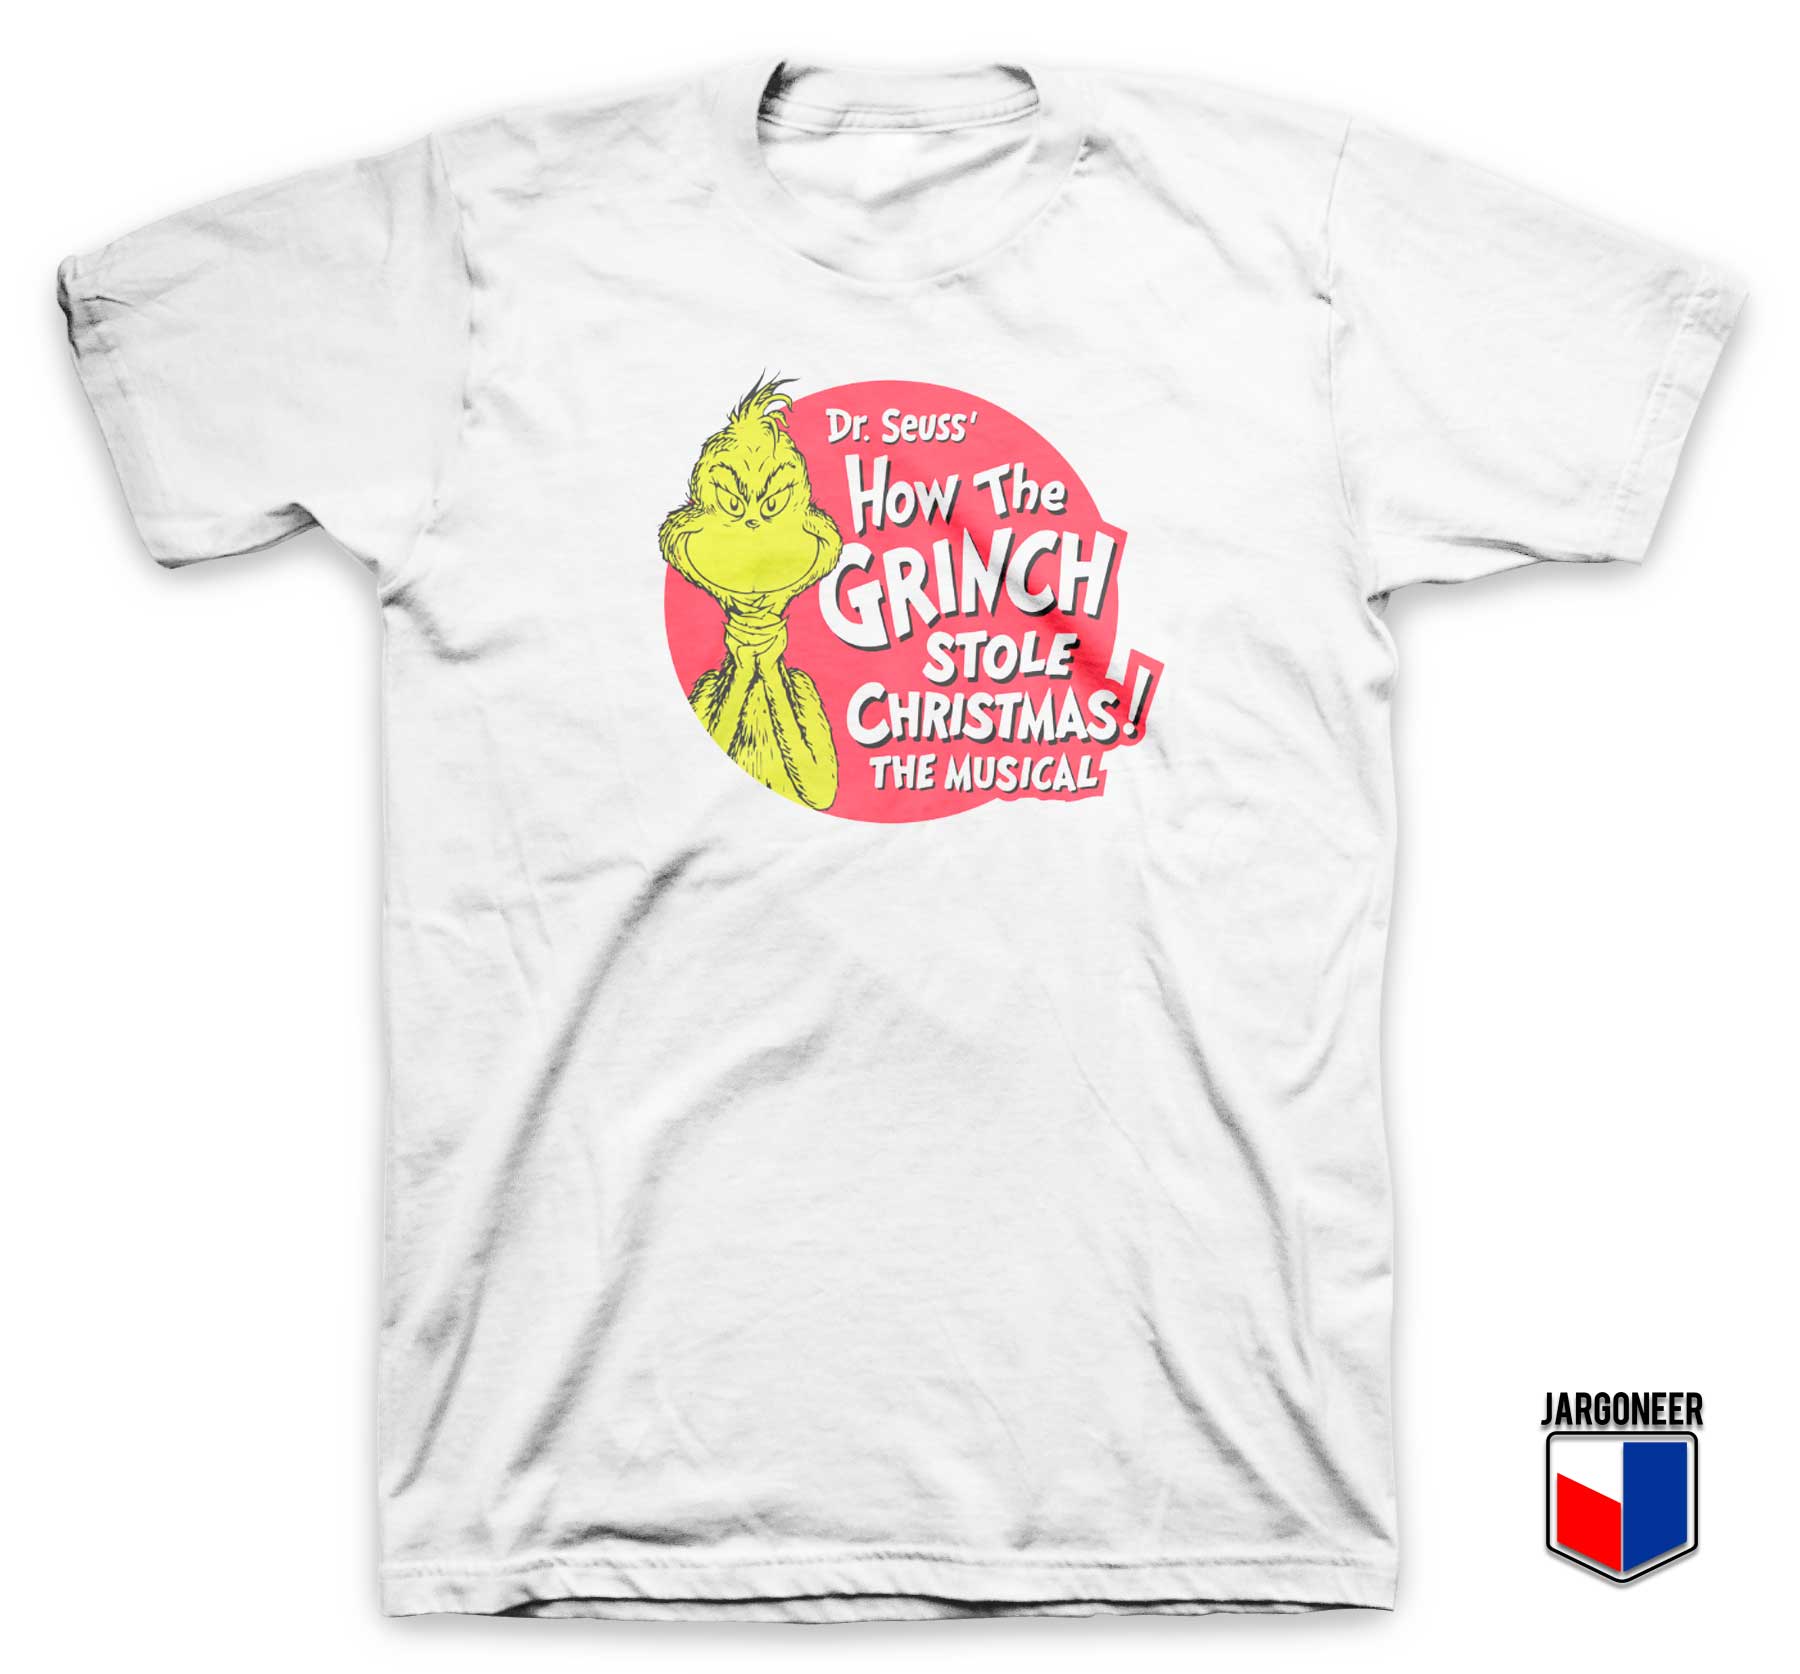 The Grinch Stole Christmas T Shirt - Shop Unique Graphic Cool Shirt Designs